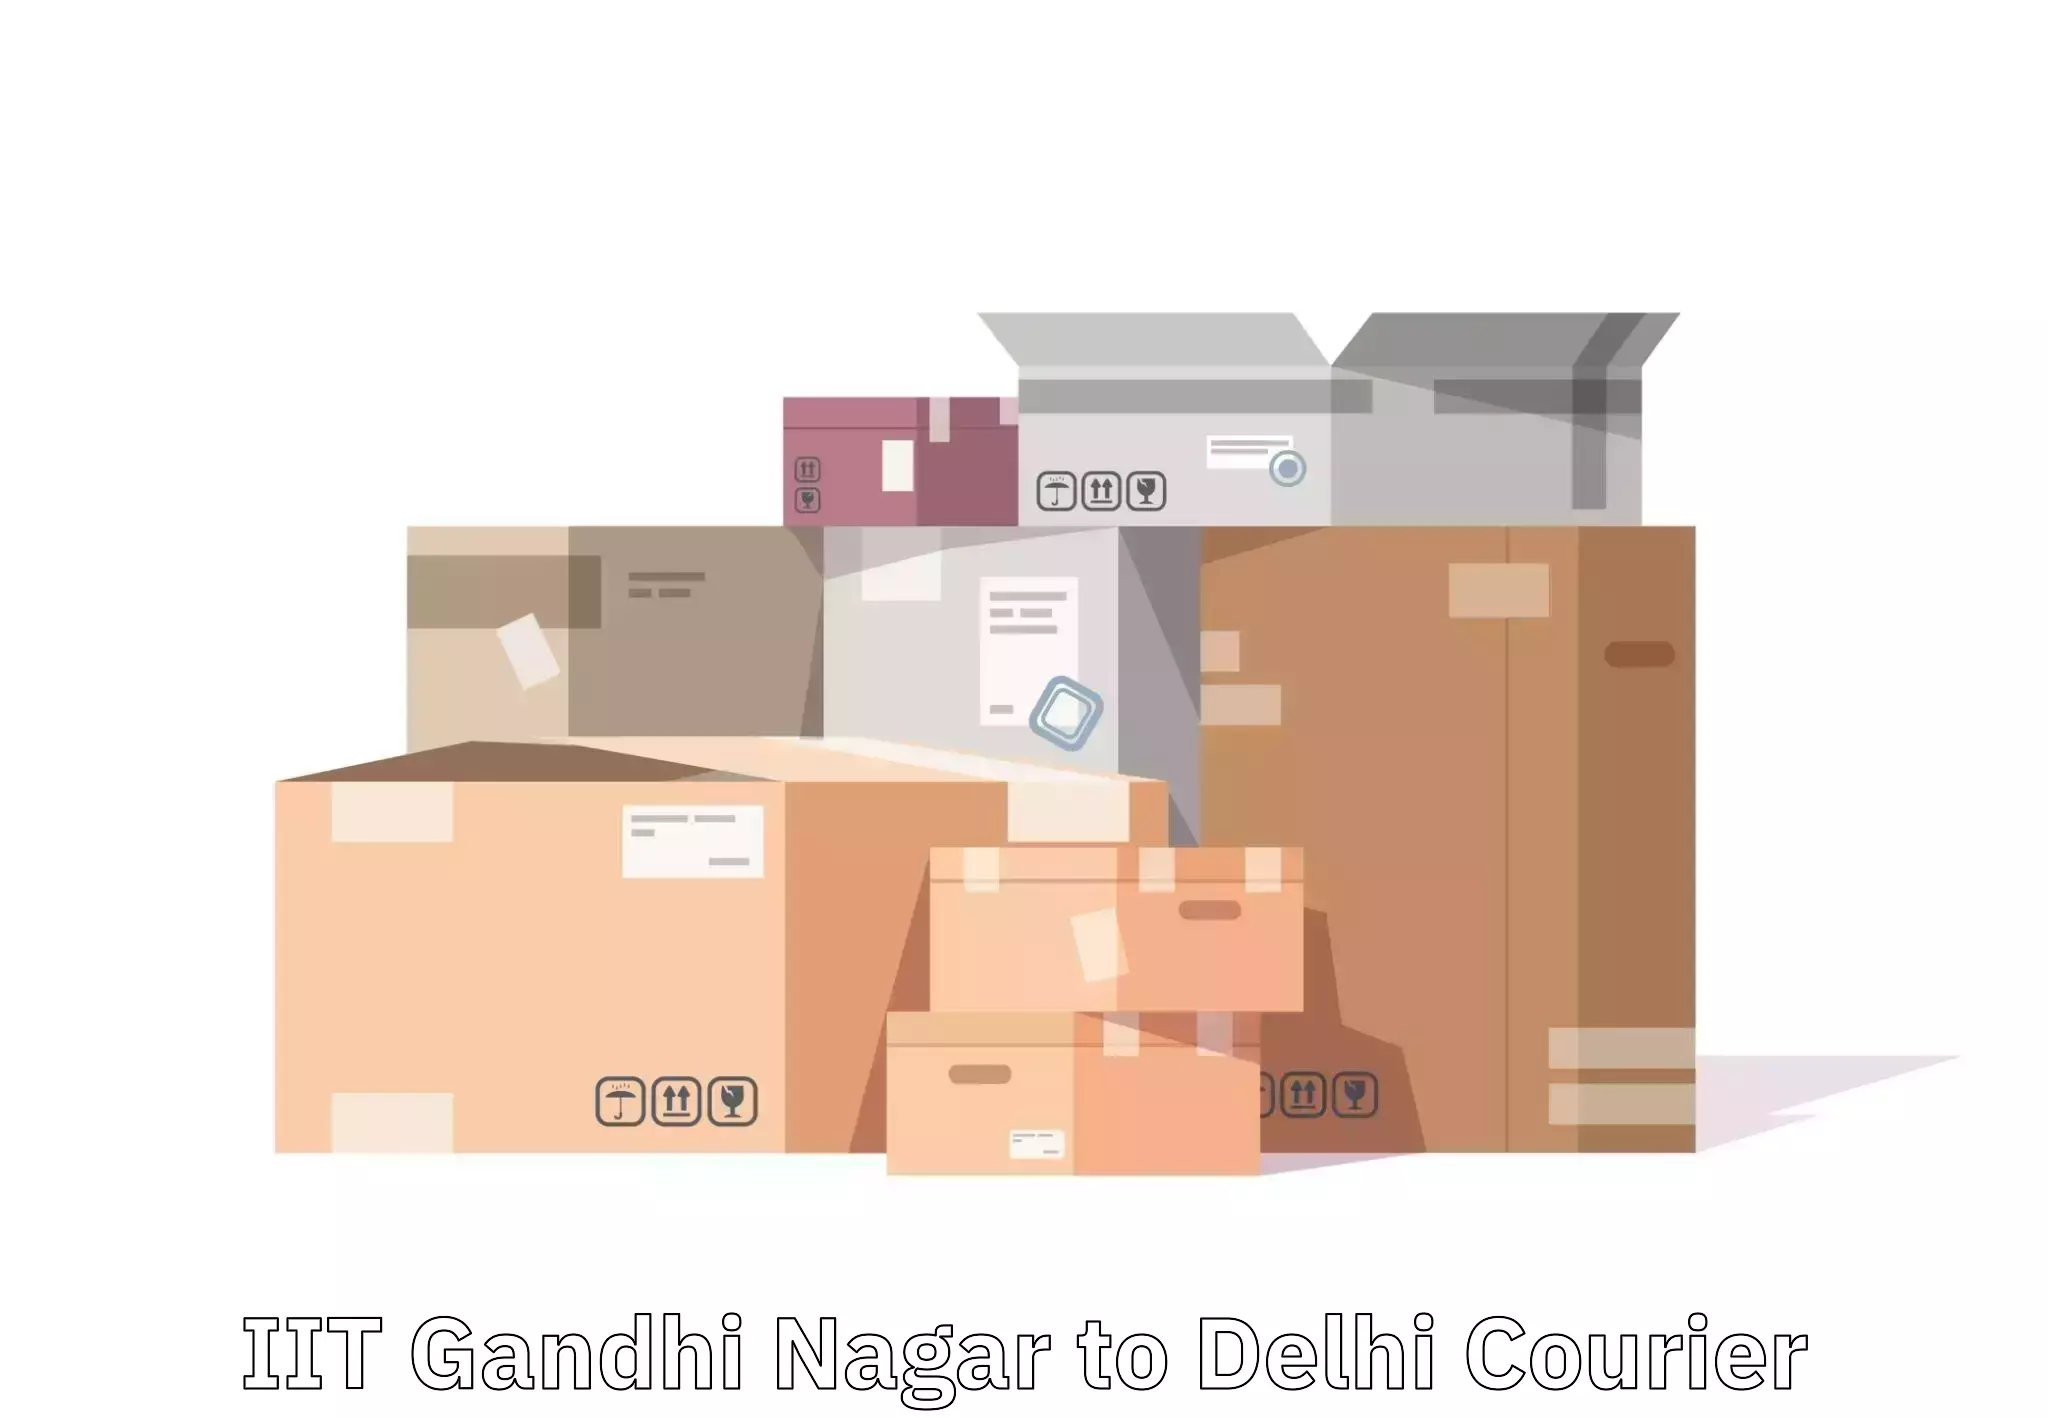 Baggage relocation service IIT Gandhi Nagar to Delhi